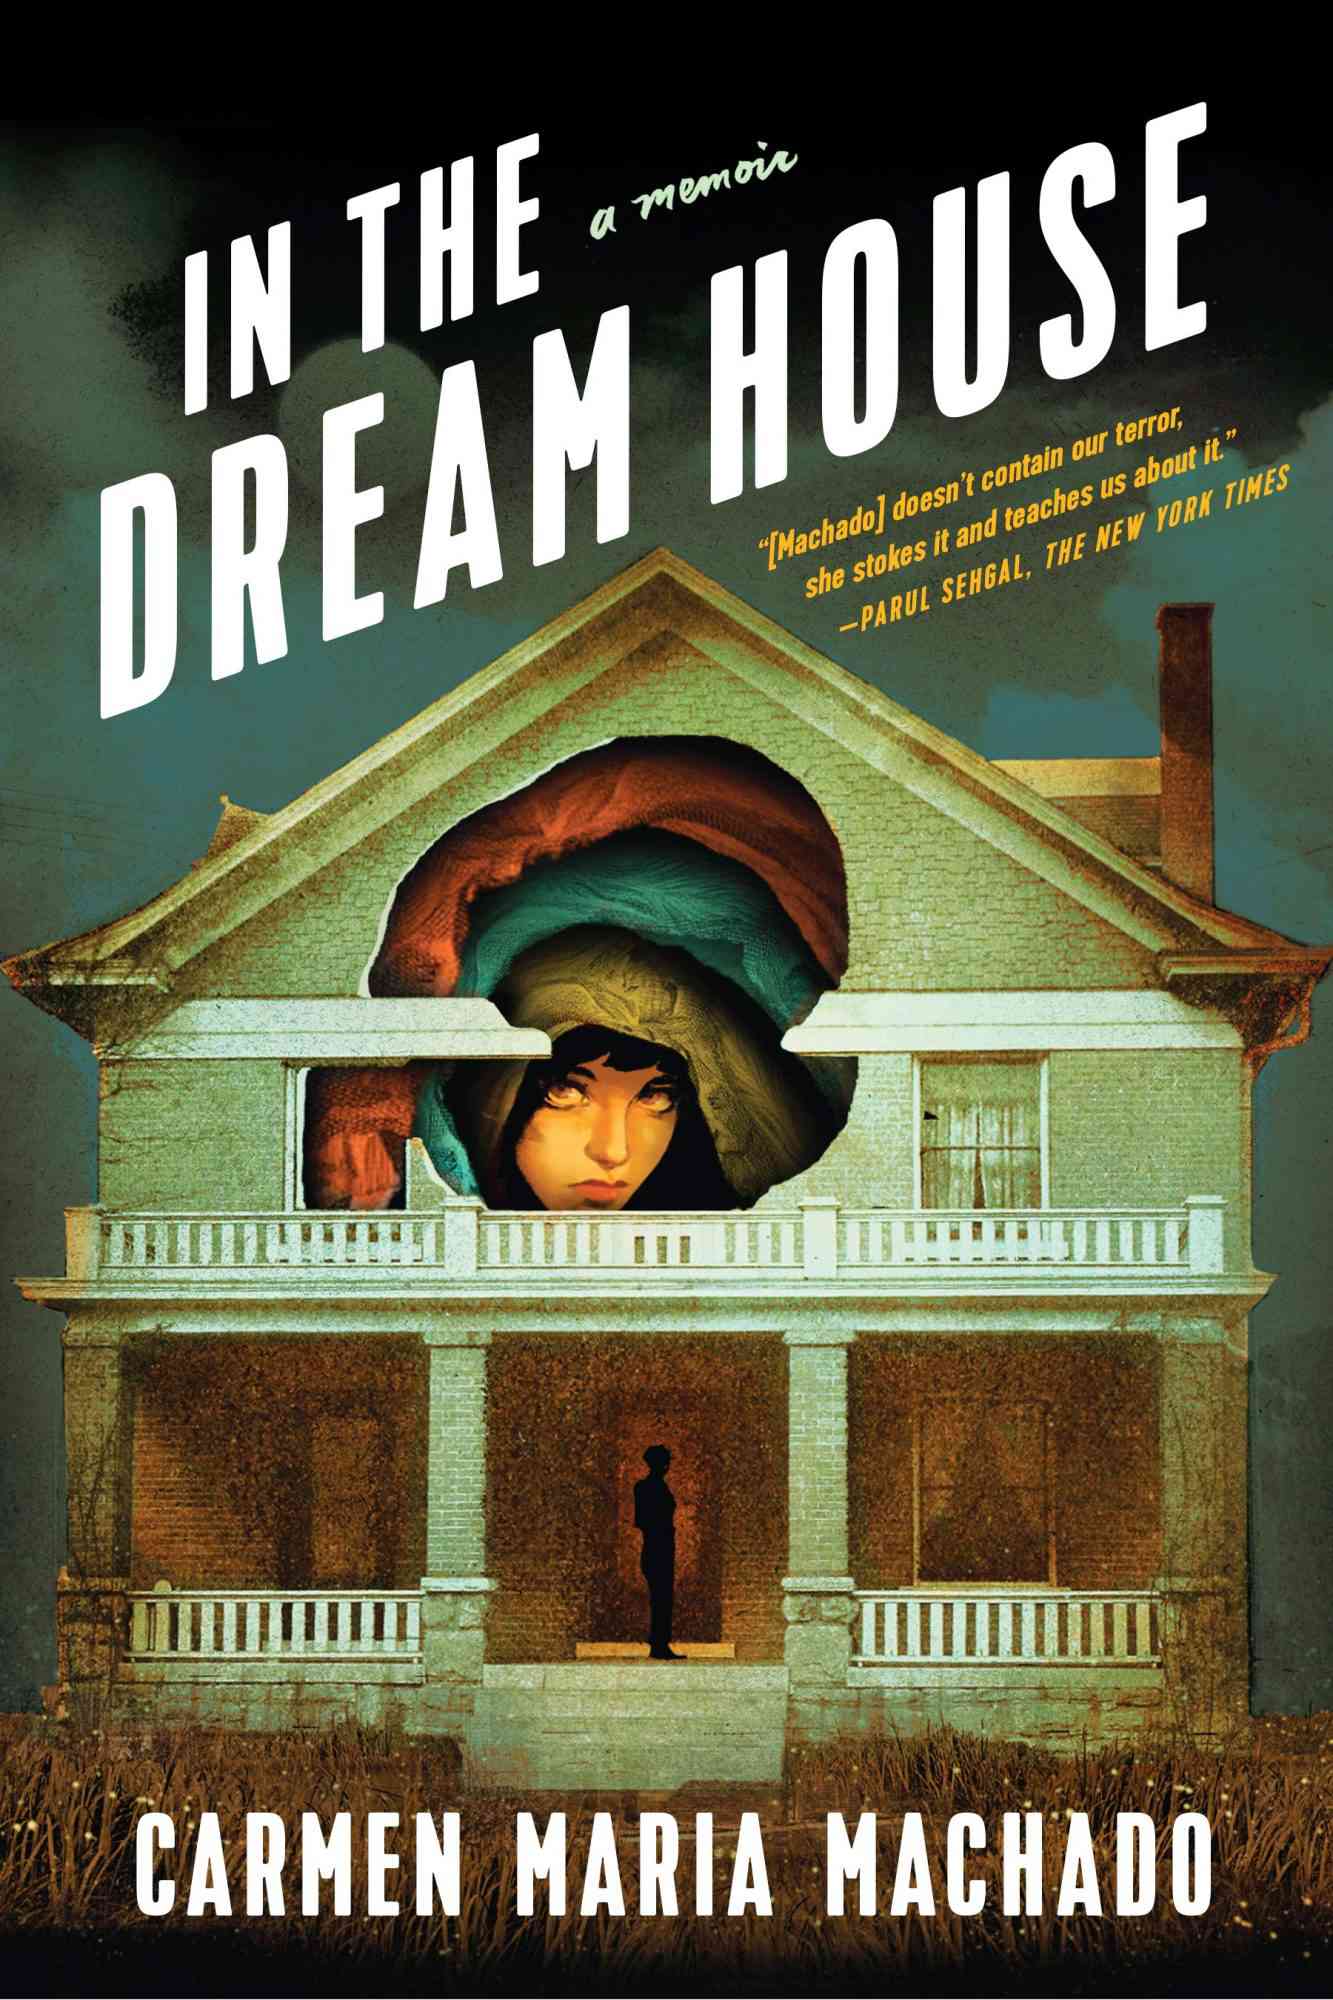 In The Dream House by Carmen Maria Machado